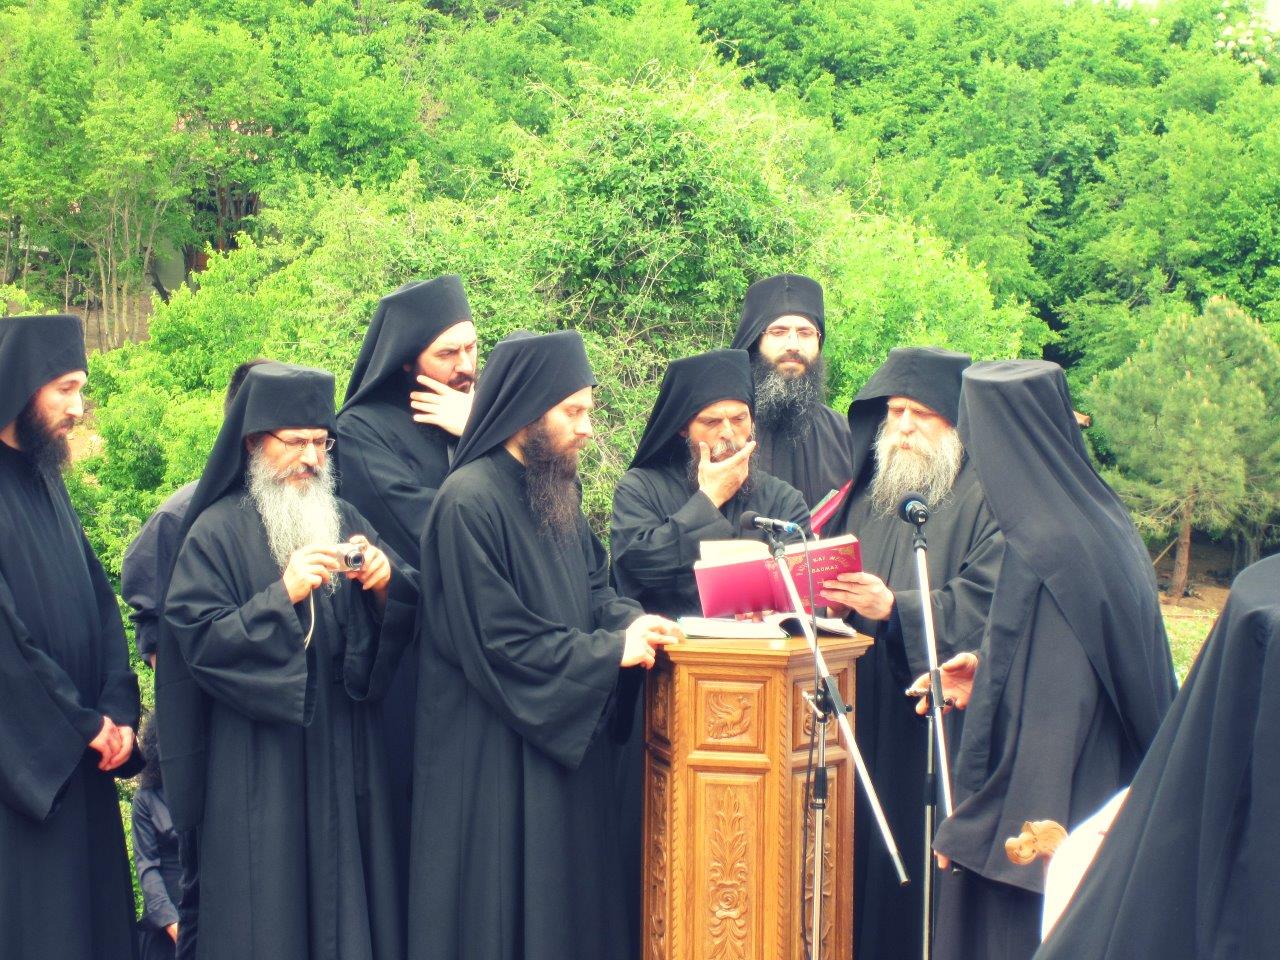 Monks in a Greek monastery